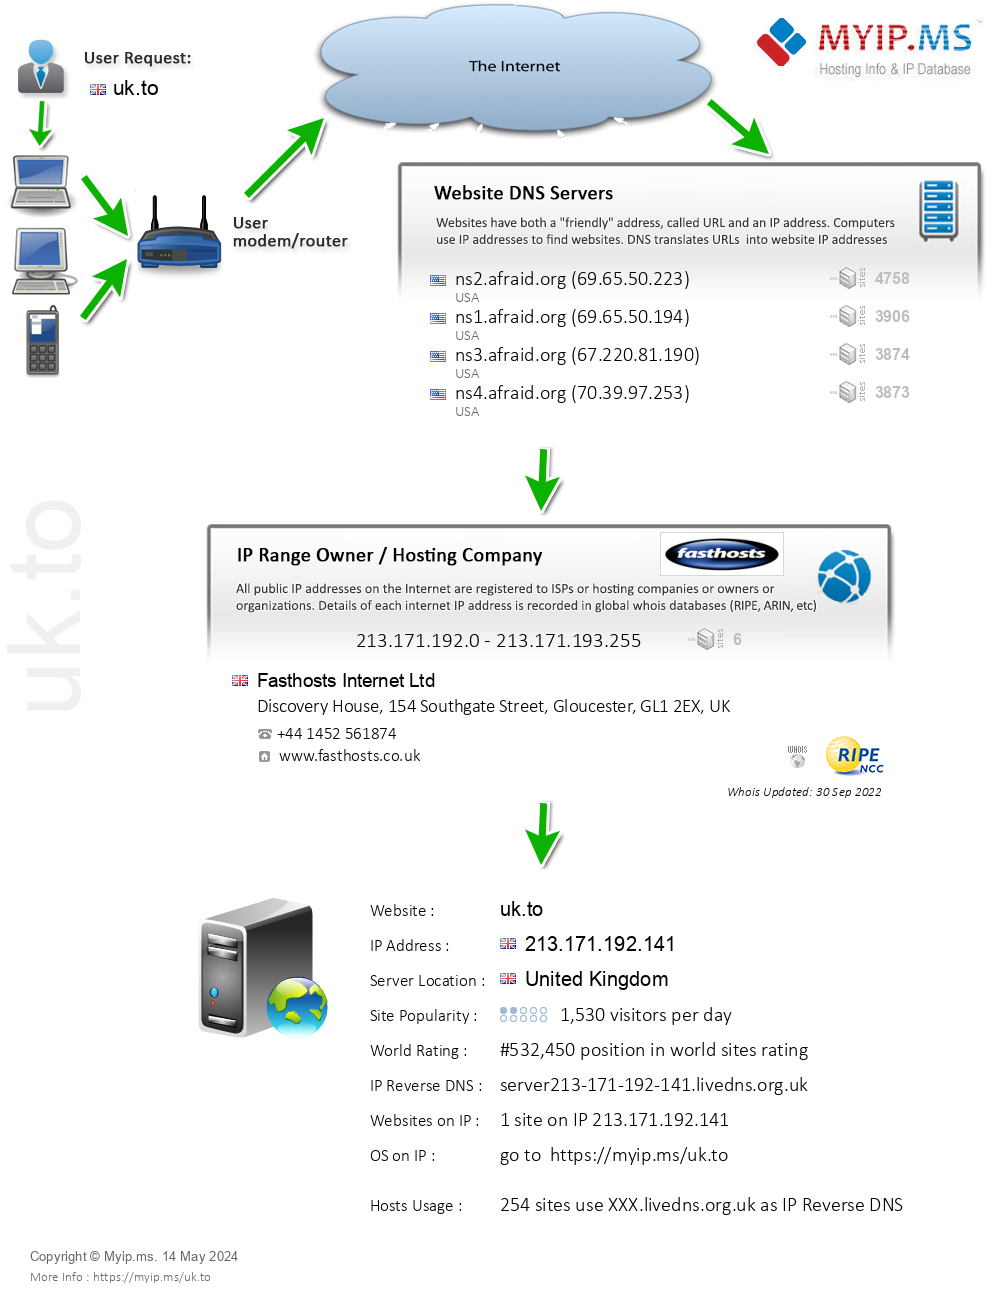 Uk.to - Website Hosting Visual IP Diagram